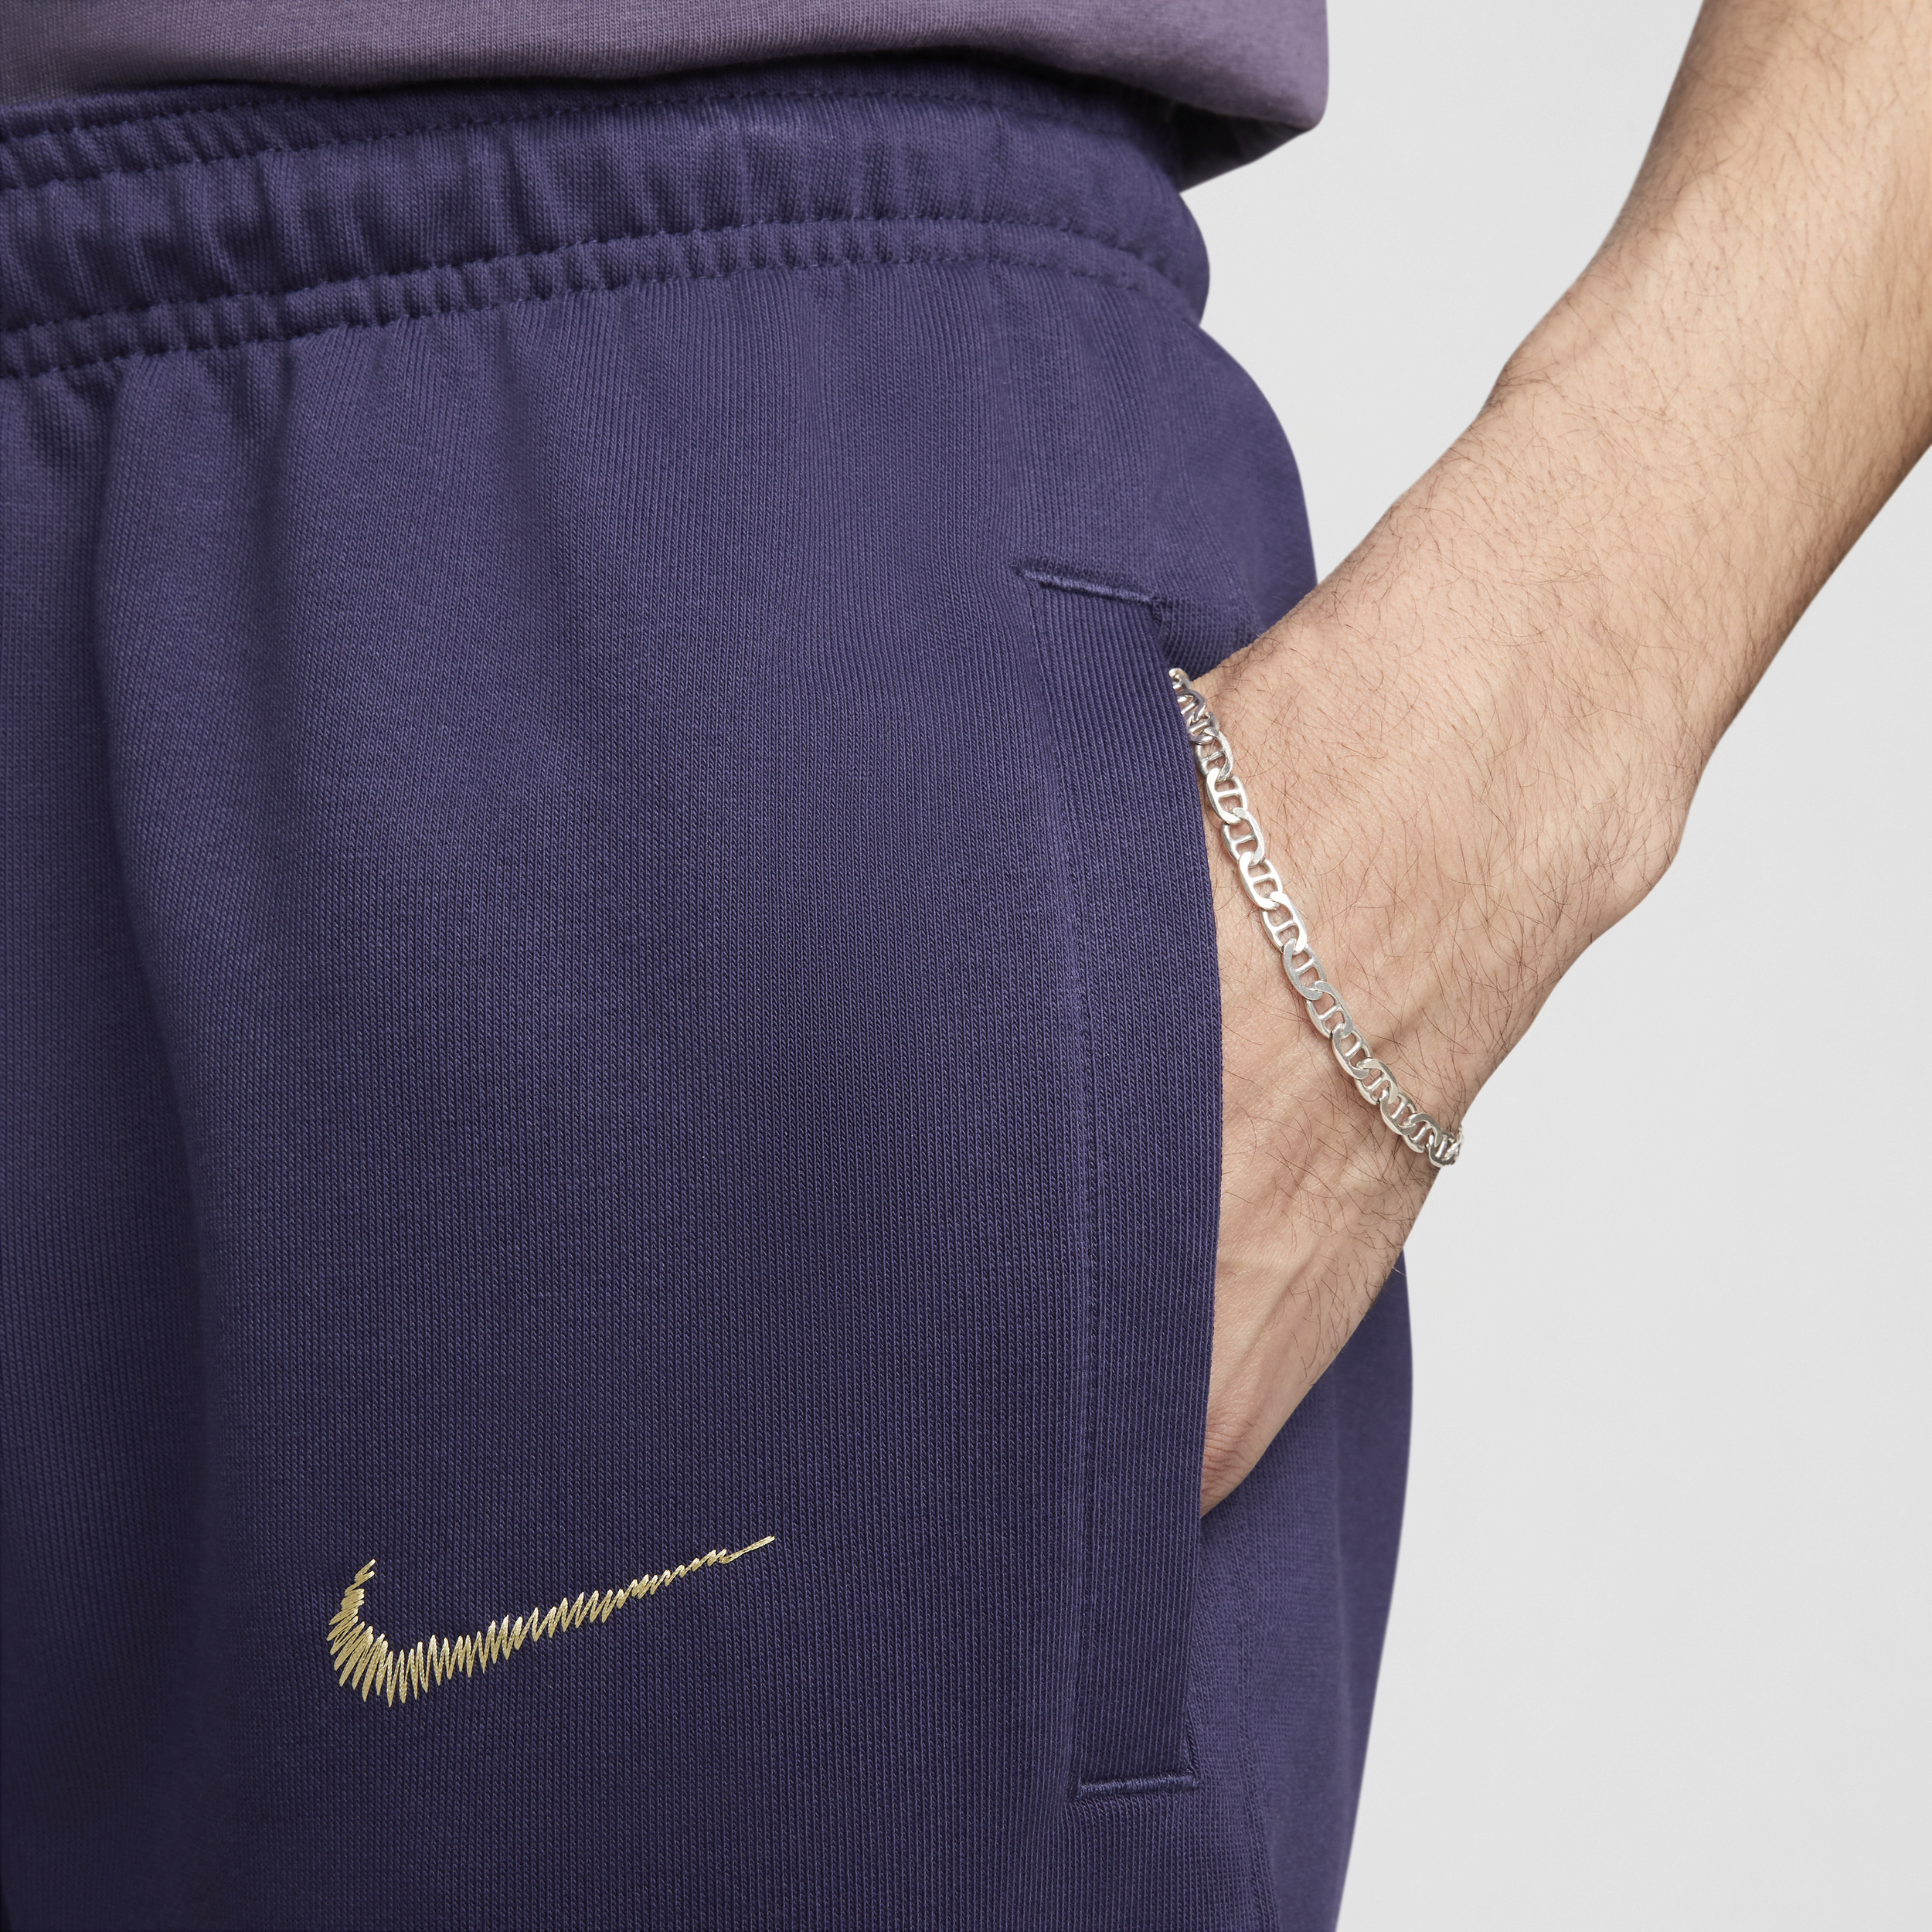 Nike Engeland Standard Issue voetbalbroek voor heren Paars